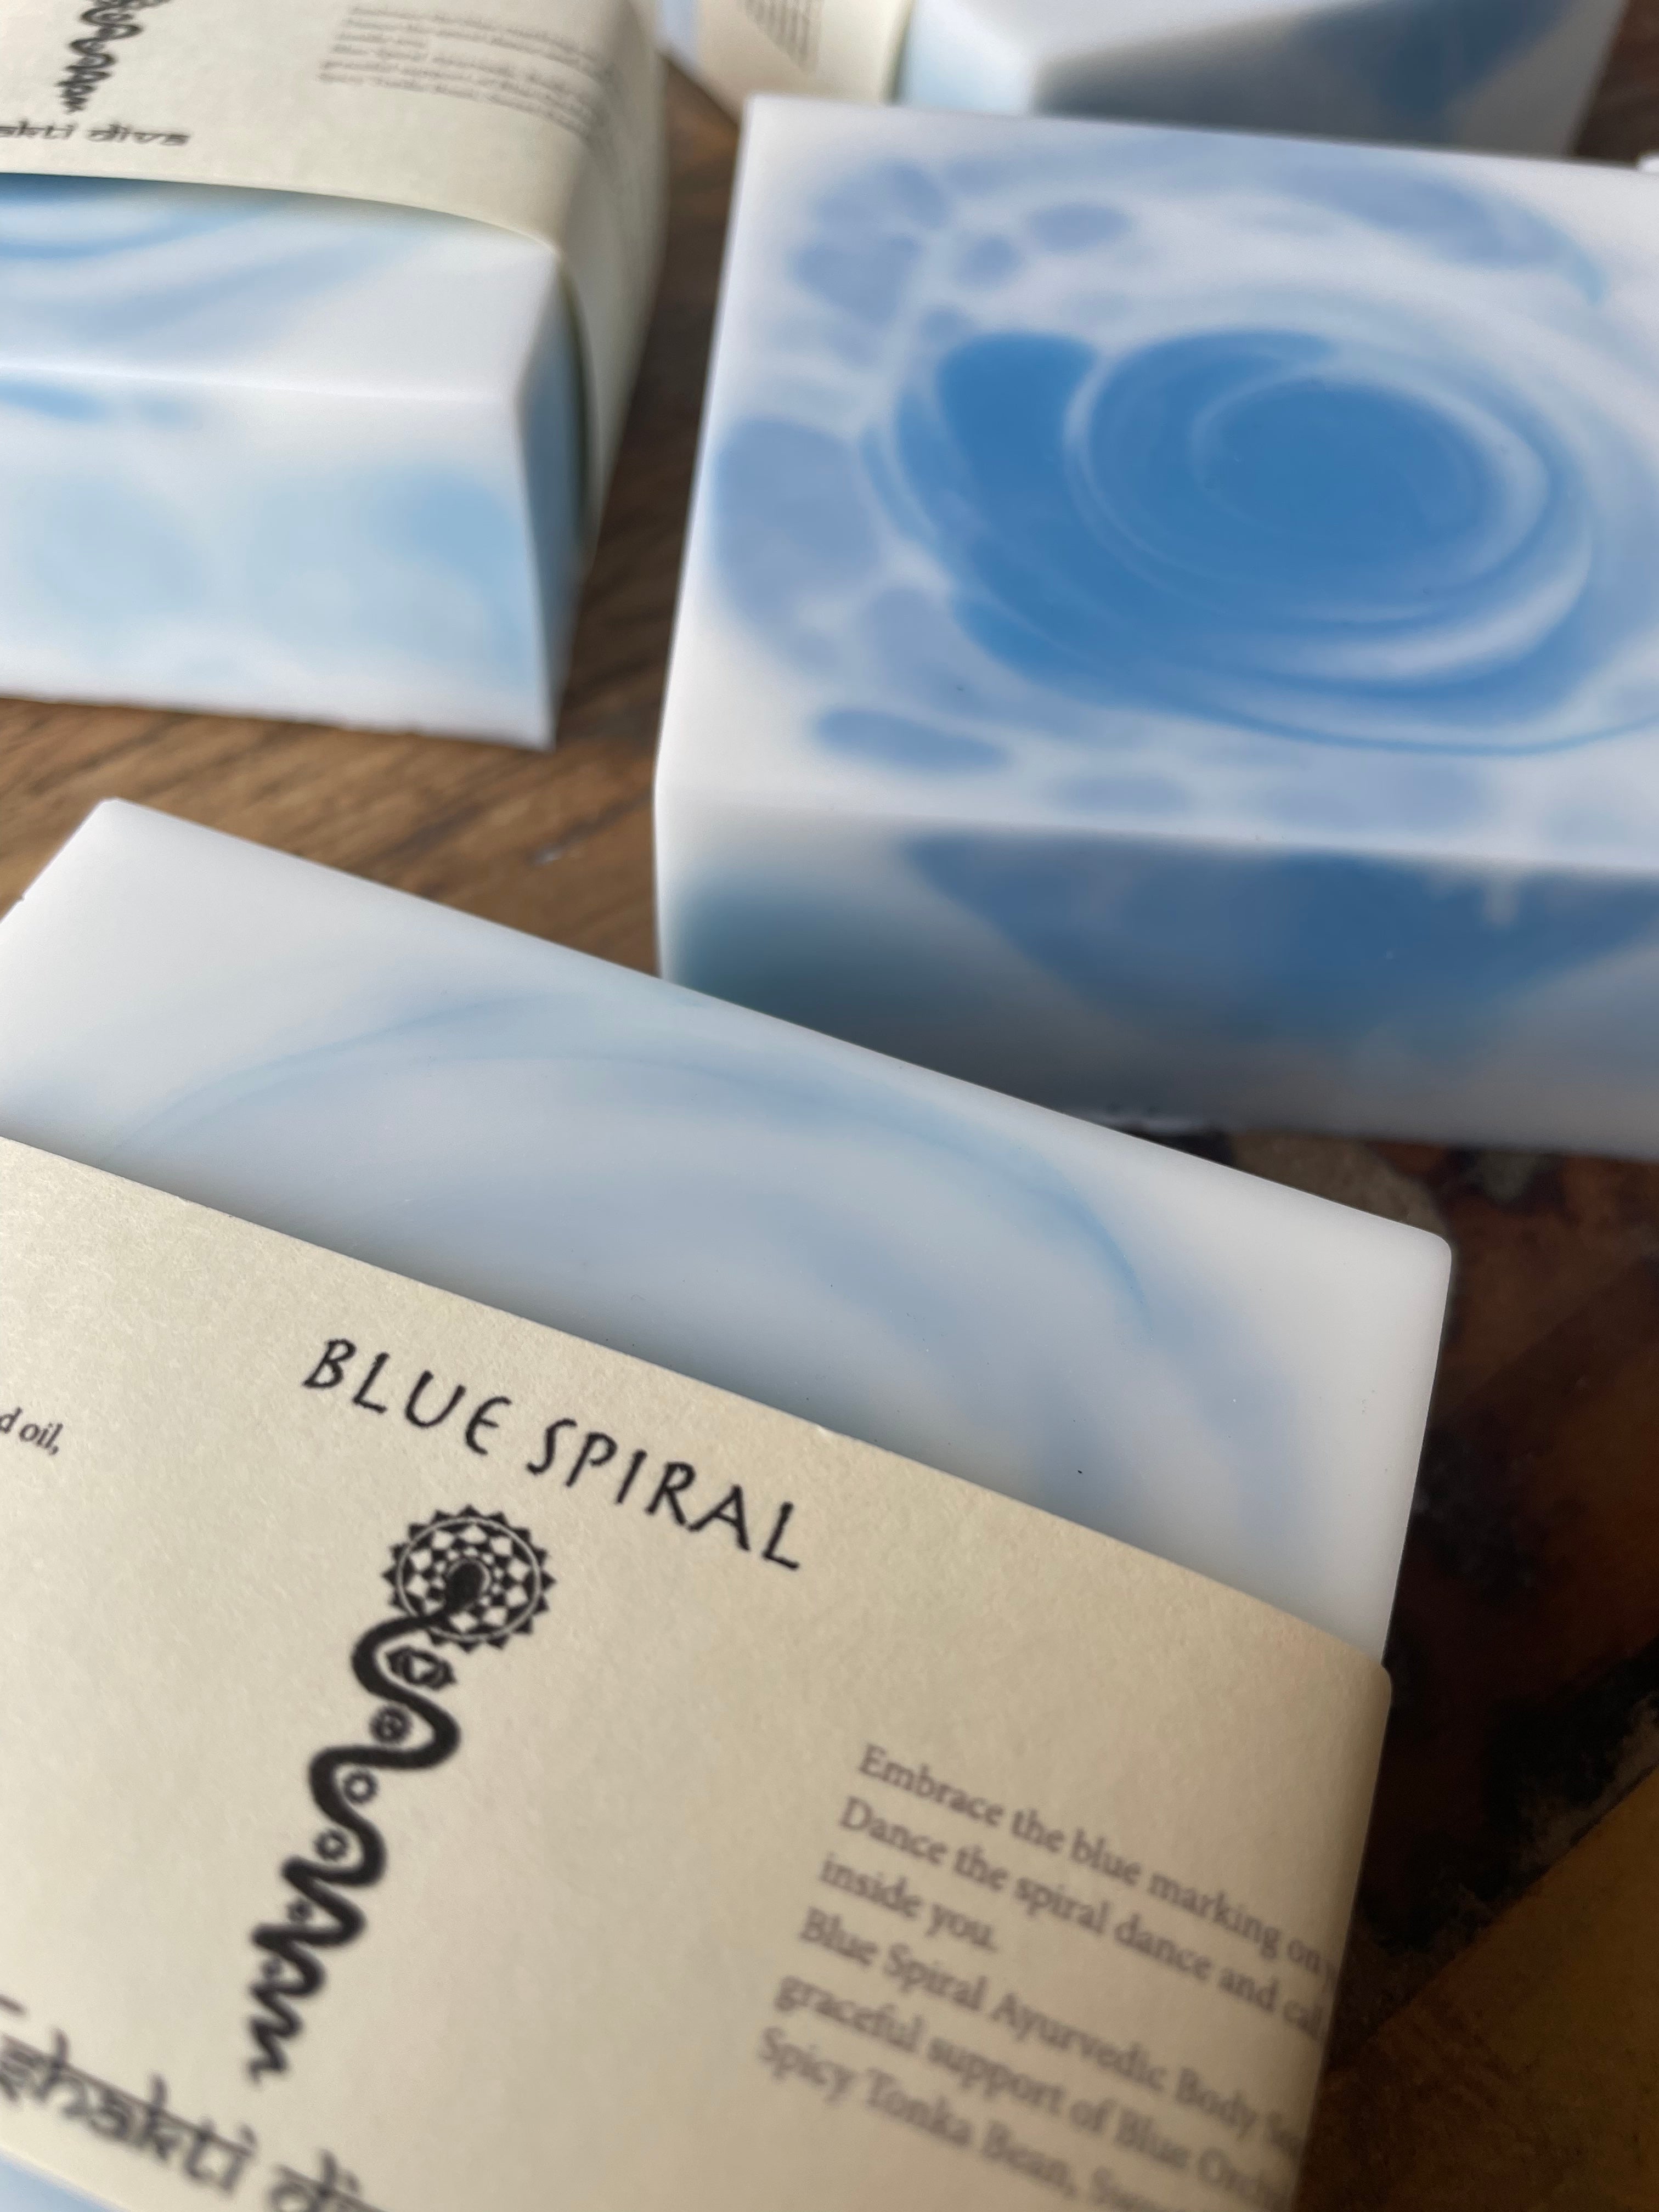 Blue Spiral Soap